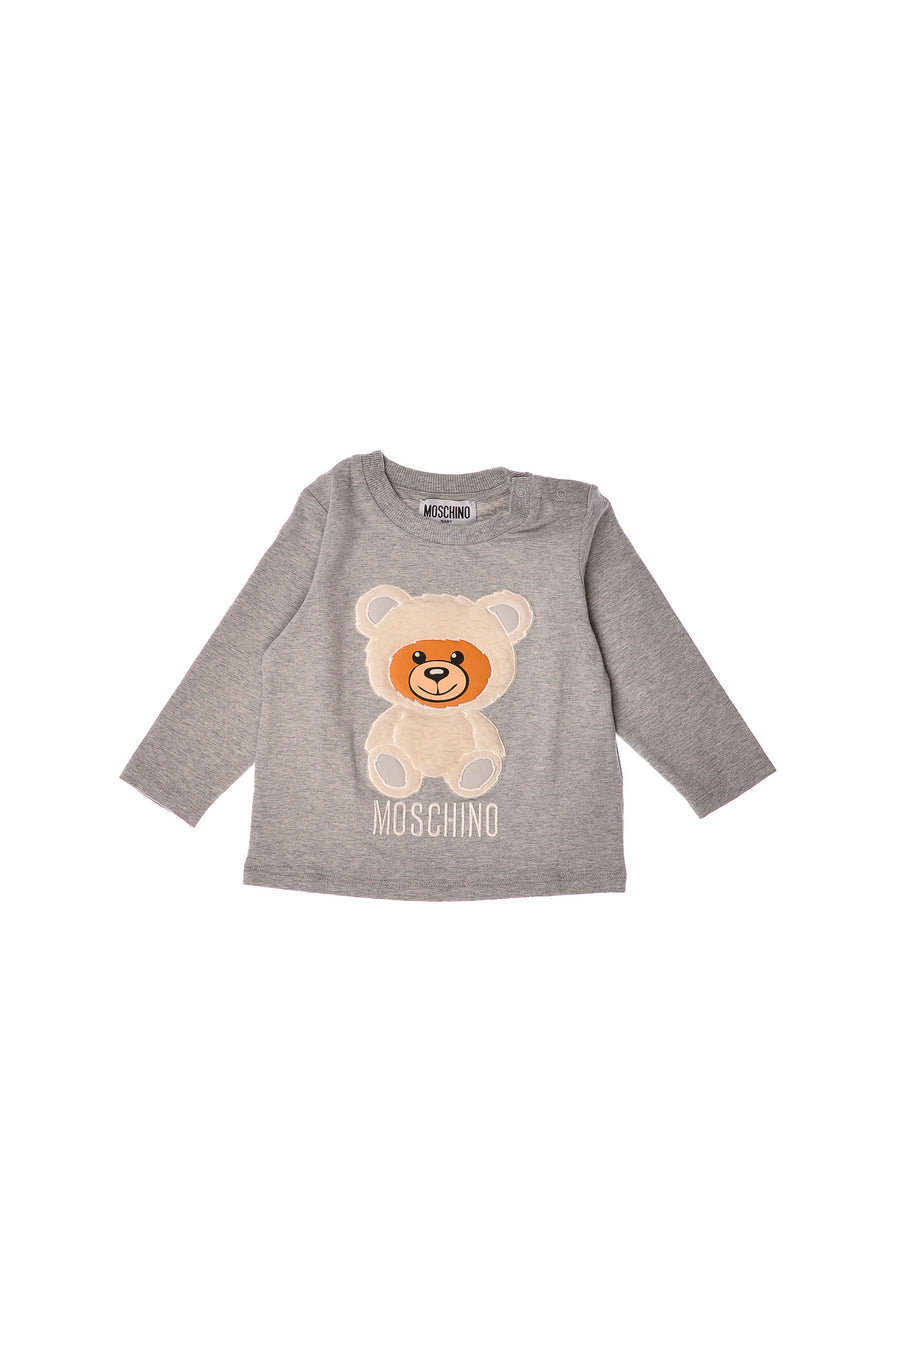 T-shirt grigio teddy embroidery